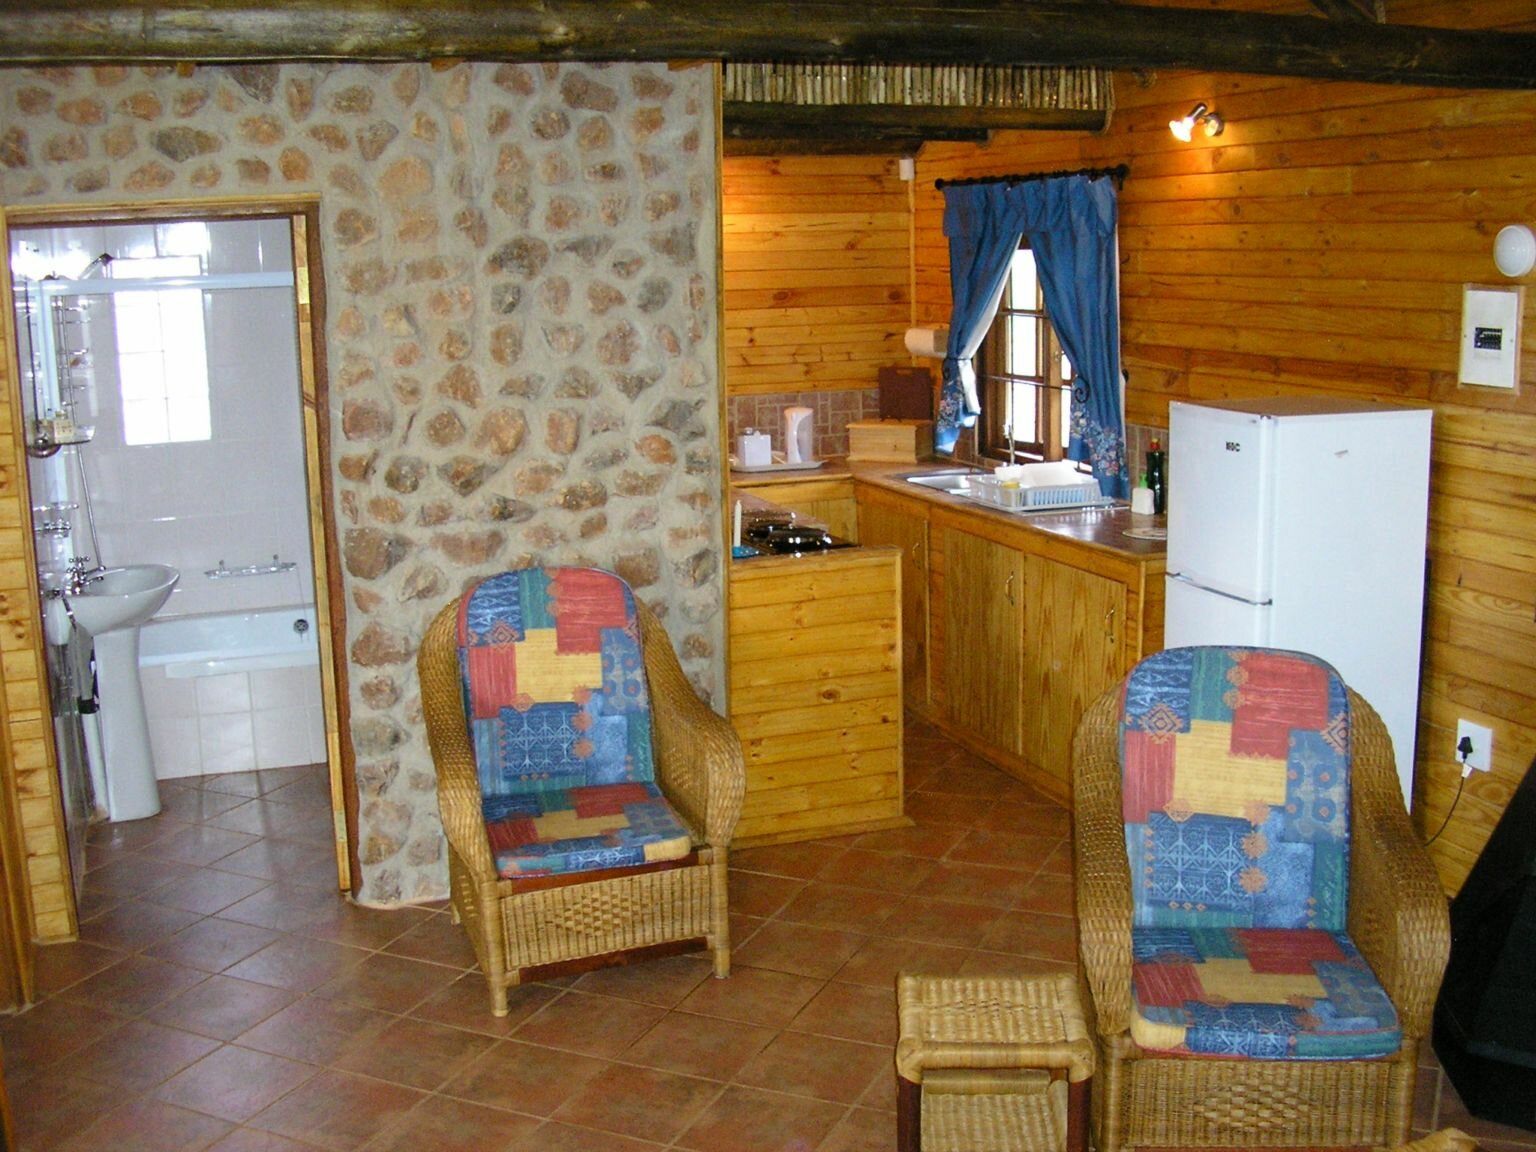 Inside cottage